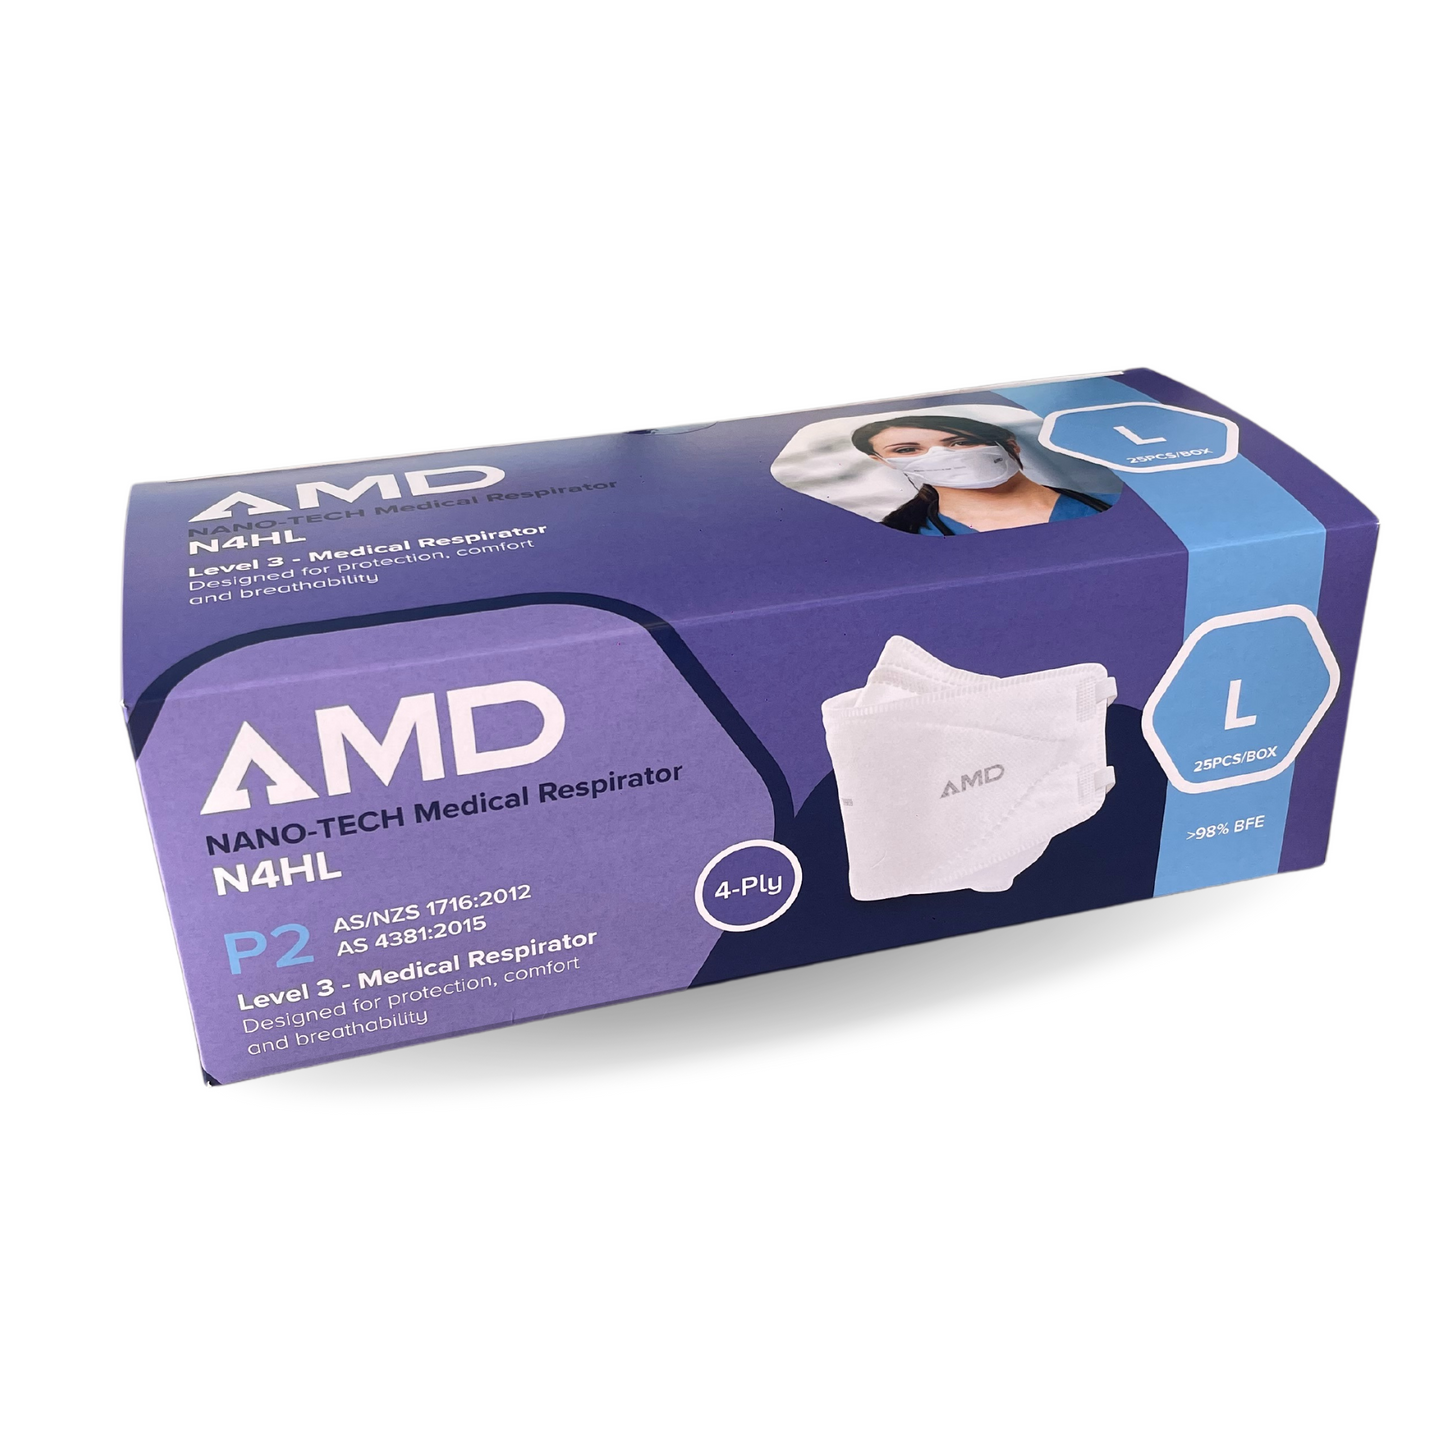 AMD P2 Nano-tech Respirator Mask, 4-layer - Head Bands N4HL - Lge - White - Carton (1000pc)